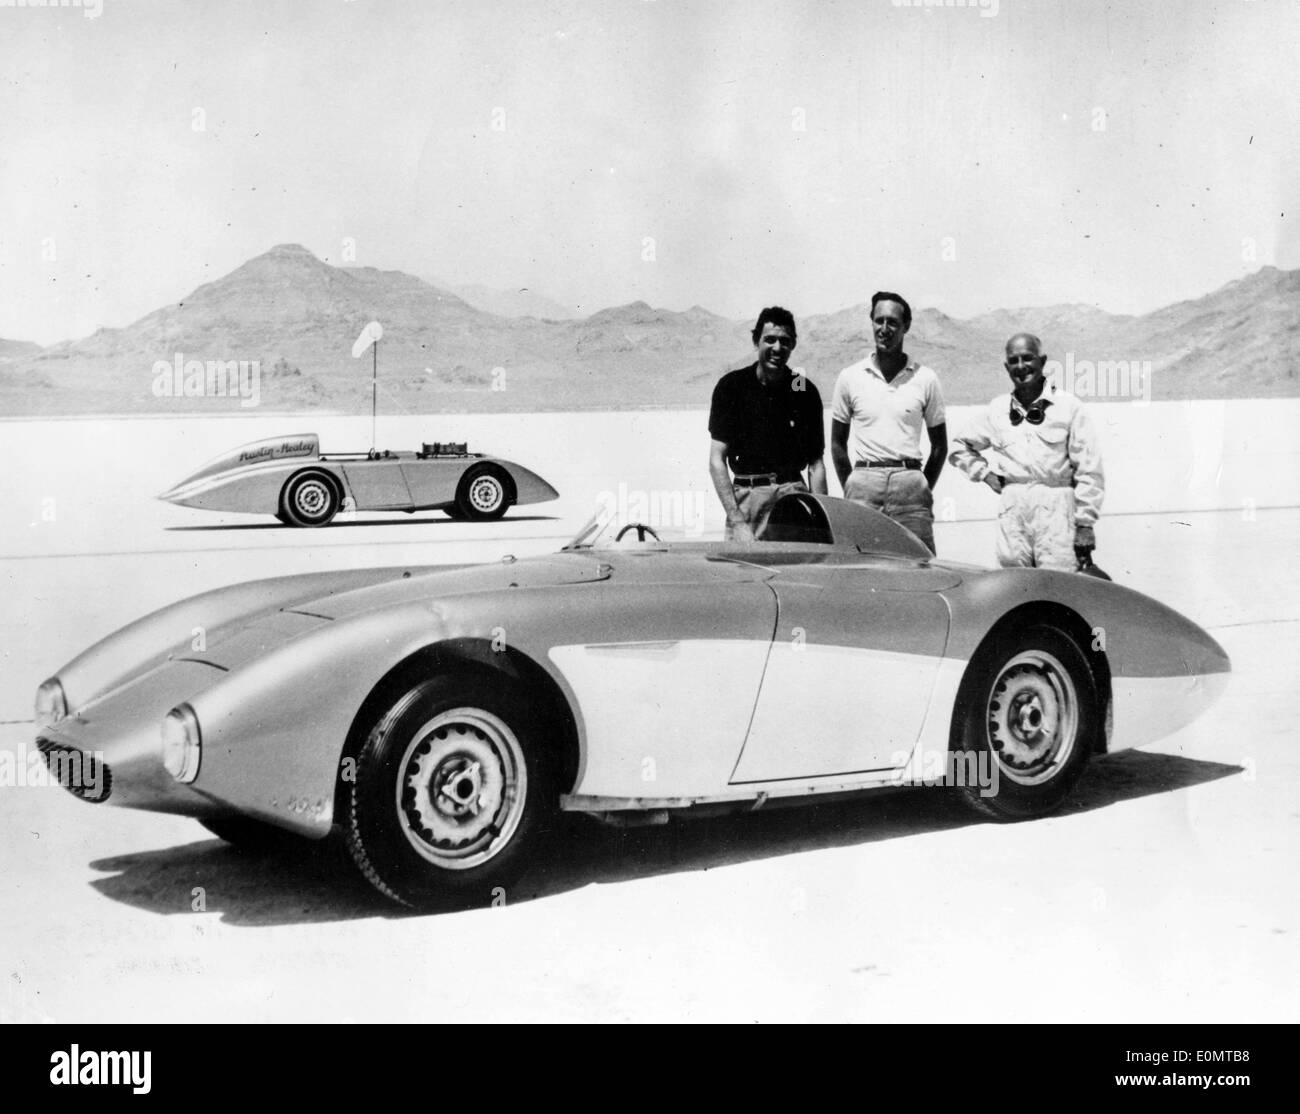 Photo - Carroll Shelby (Jan 11, 1923-10 mai 2012), l'une des plus grandes légendes de l'industrie automobile et d'un champion de course automobile, qui a construit la fameuse Shelby Cobra voiture de sport et a aidé à transformer les mustang de Ford et Chrysler, le Viper est décédé dans un hôpital du Texas. Il était de 89. Shelby avait maisons de Los Angeles et au Texas. Shelby a été intronisé au Temple de la renommée de l'automobile en 1992. et est mieux connu pour sa carrière dans l'industrie automobile, y compris un champion pilote de course, un propriétaire de l'équipe de course, un fabricant d'automobiles et un consultant. Sur la photo : Aug Banque D'Images